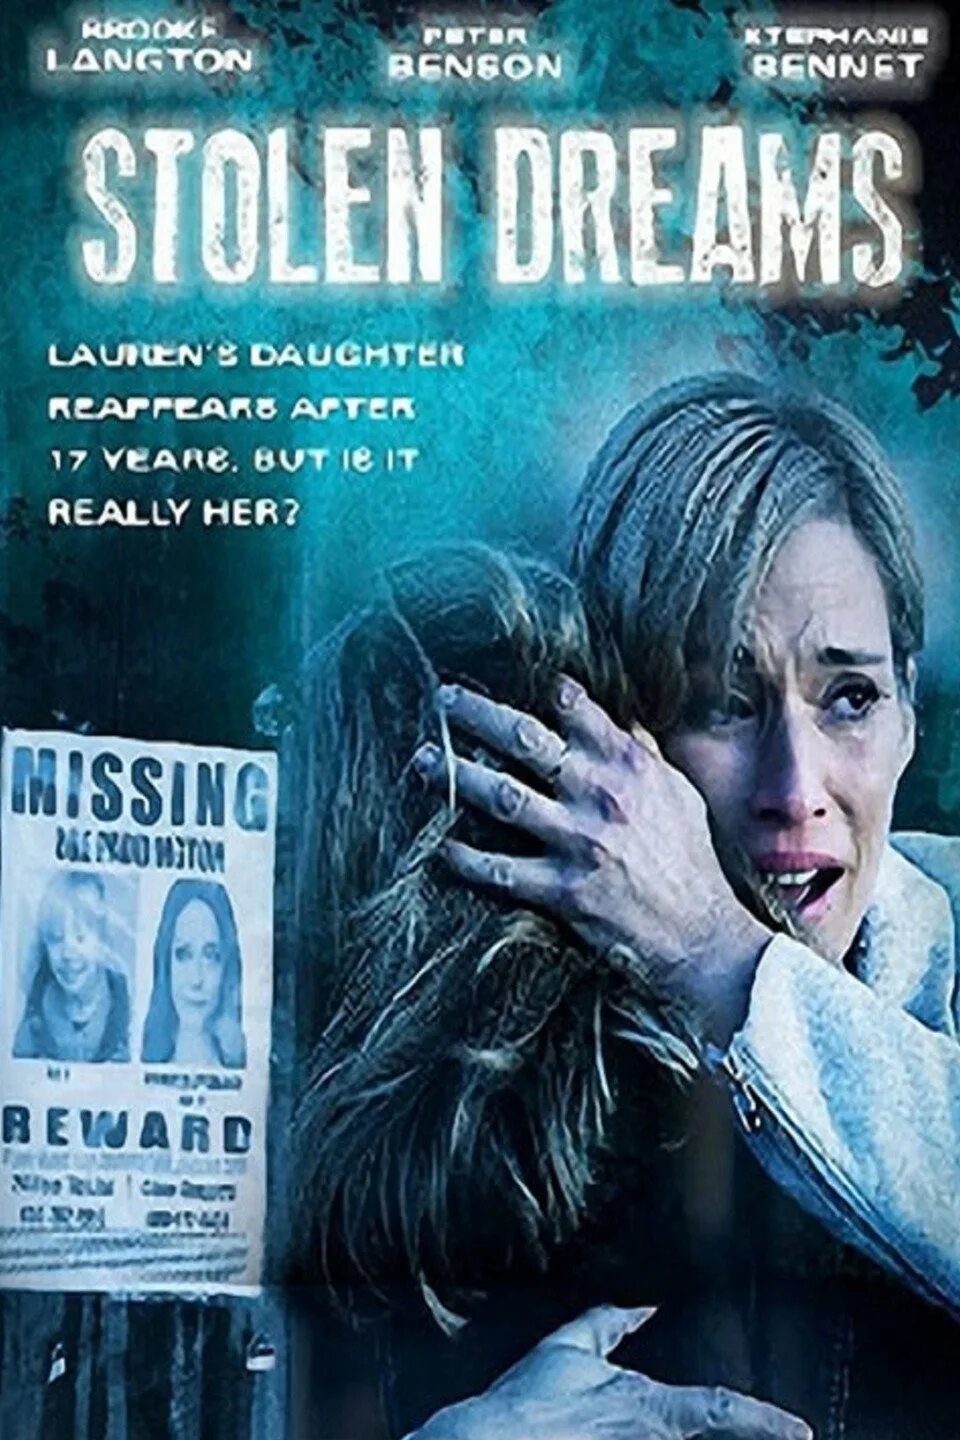 Stolen Dreams. Stolen, 2012. Dream Stealers. Stolen daughter